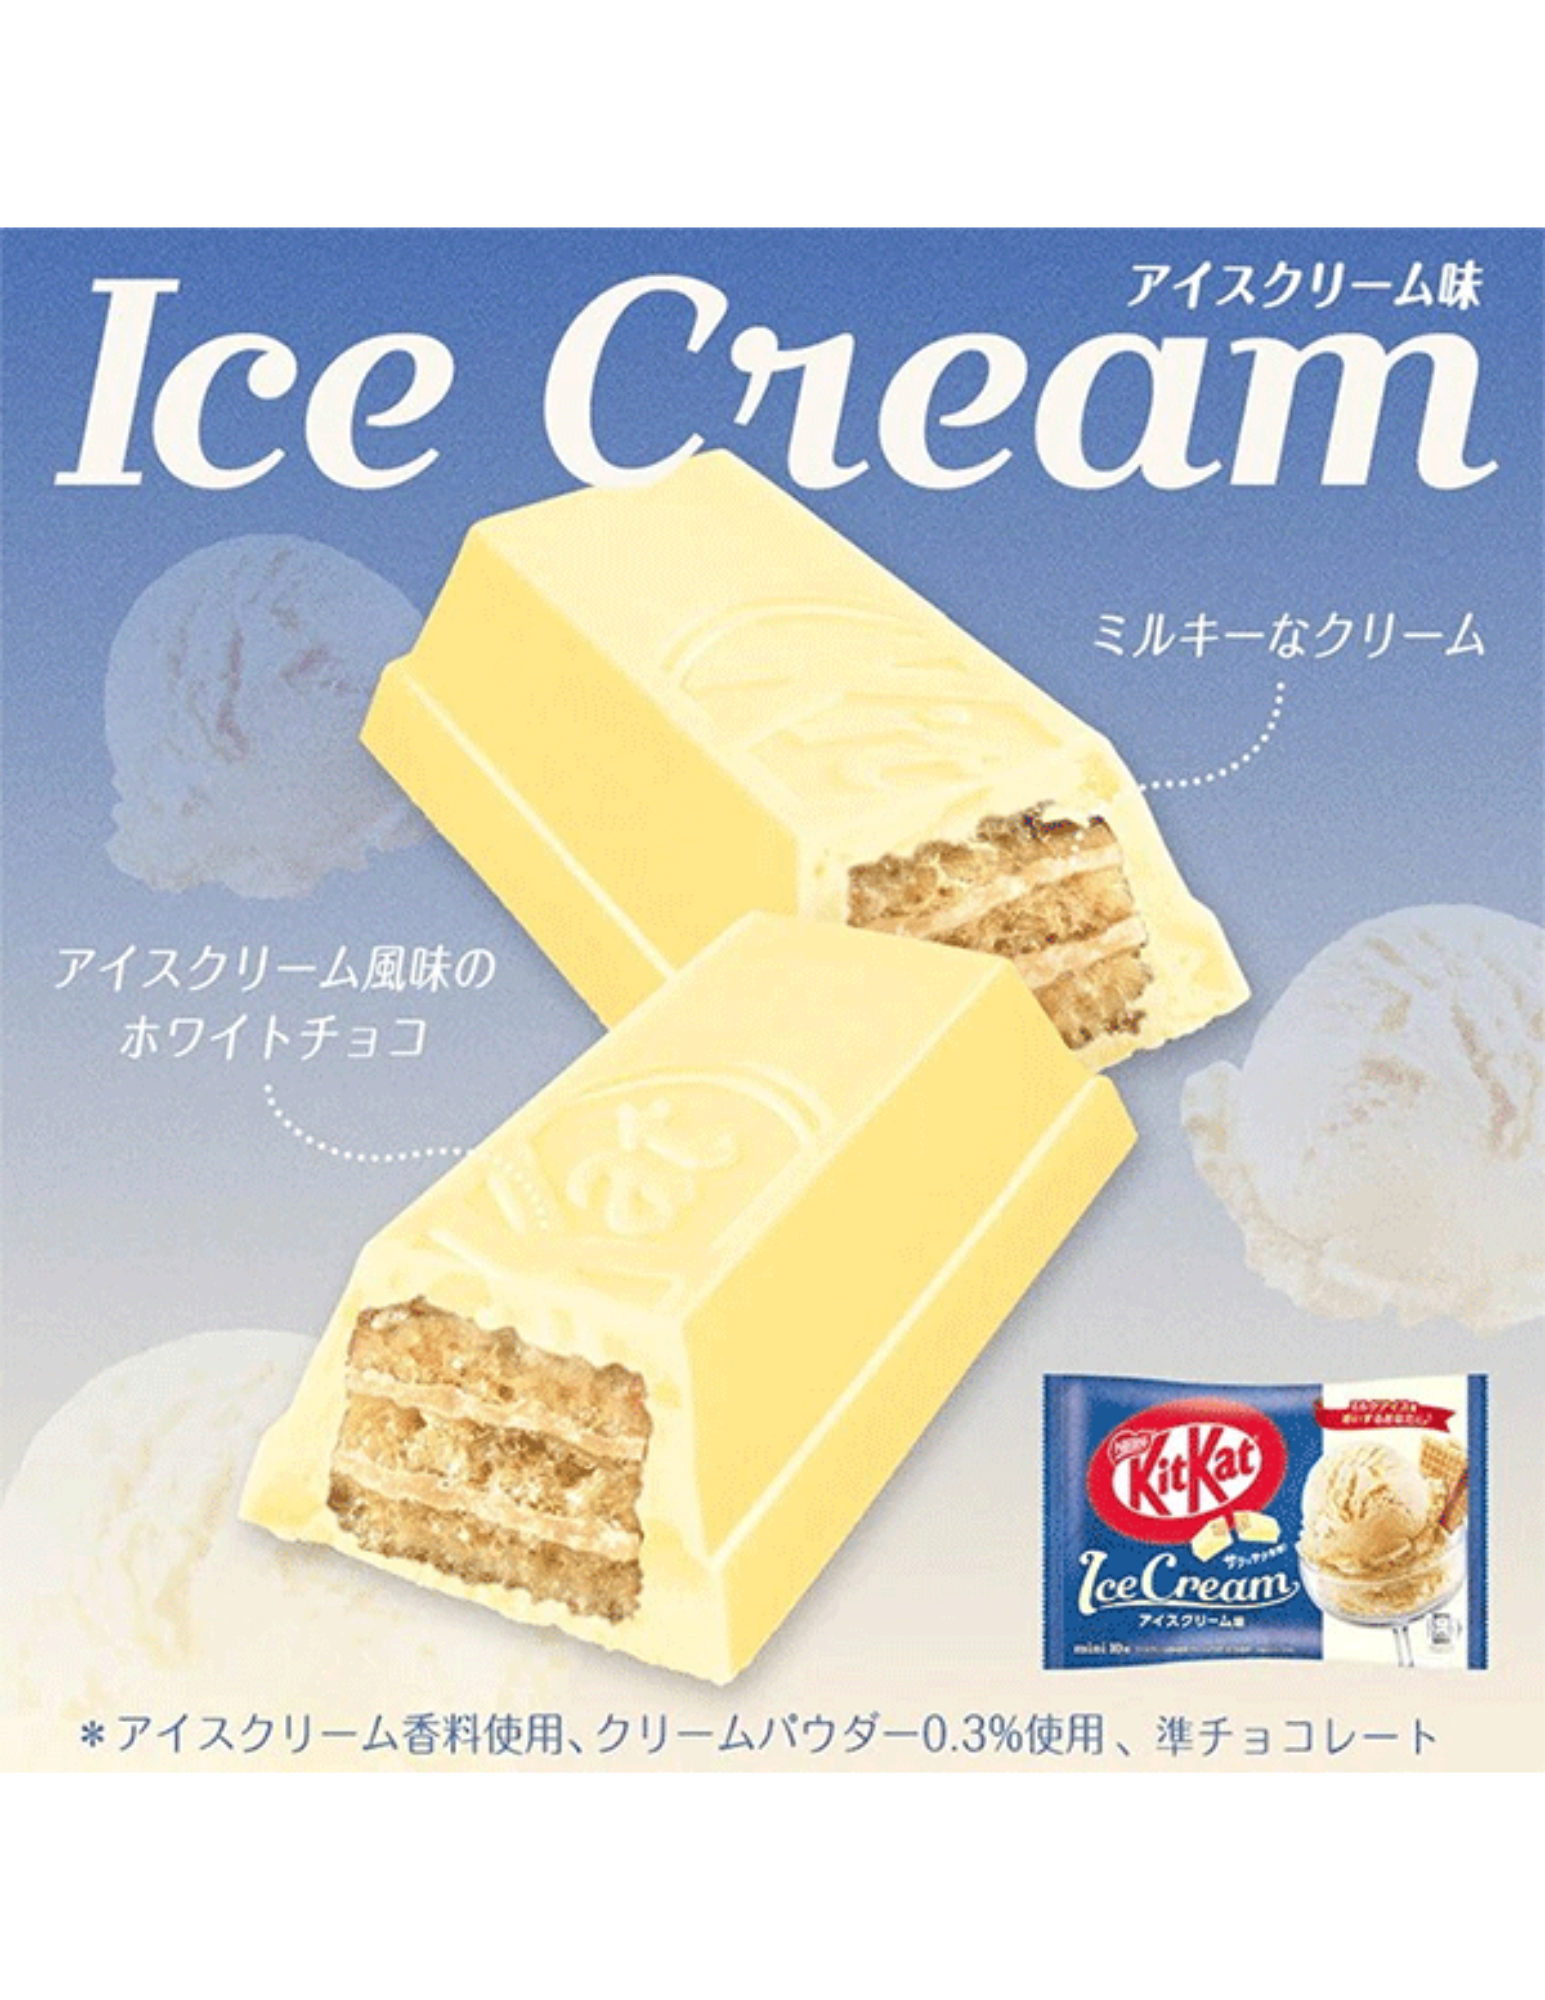 KitKat Ice Cream